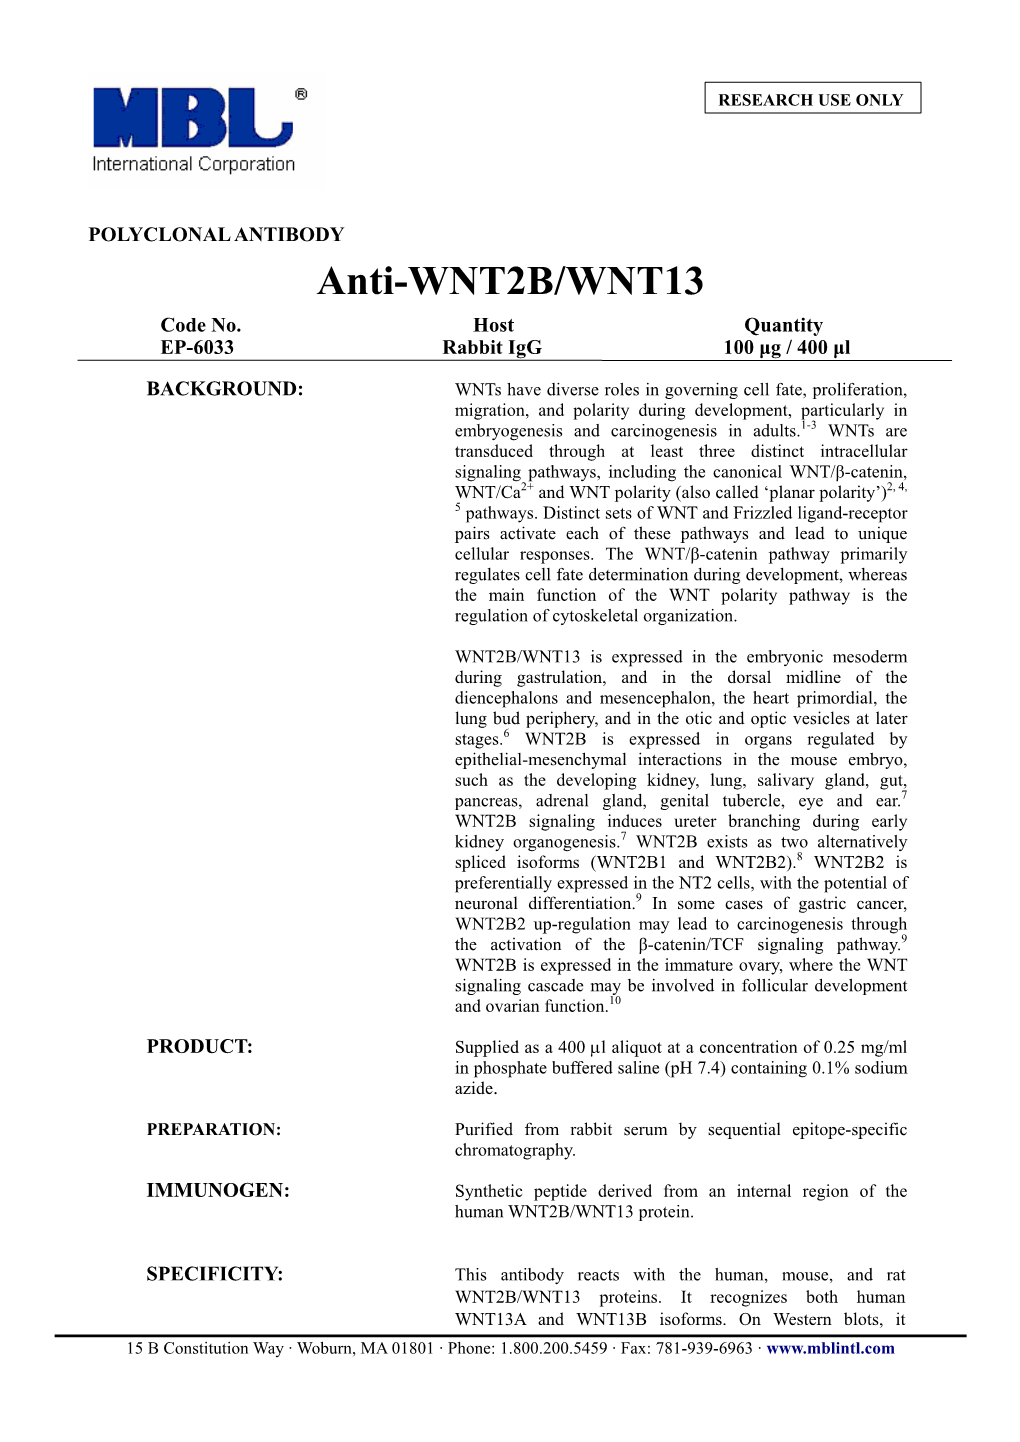 Anti-WNT2B/WNT13 Code No